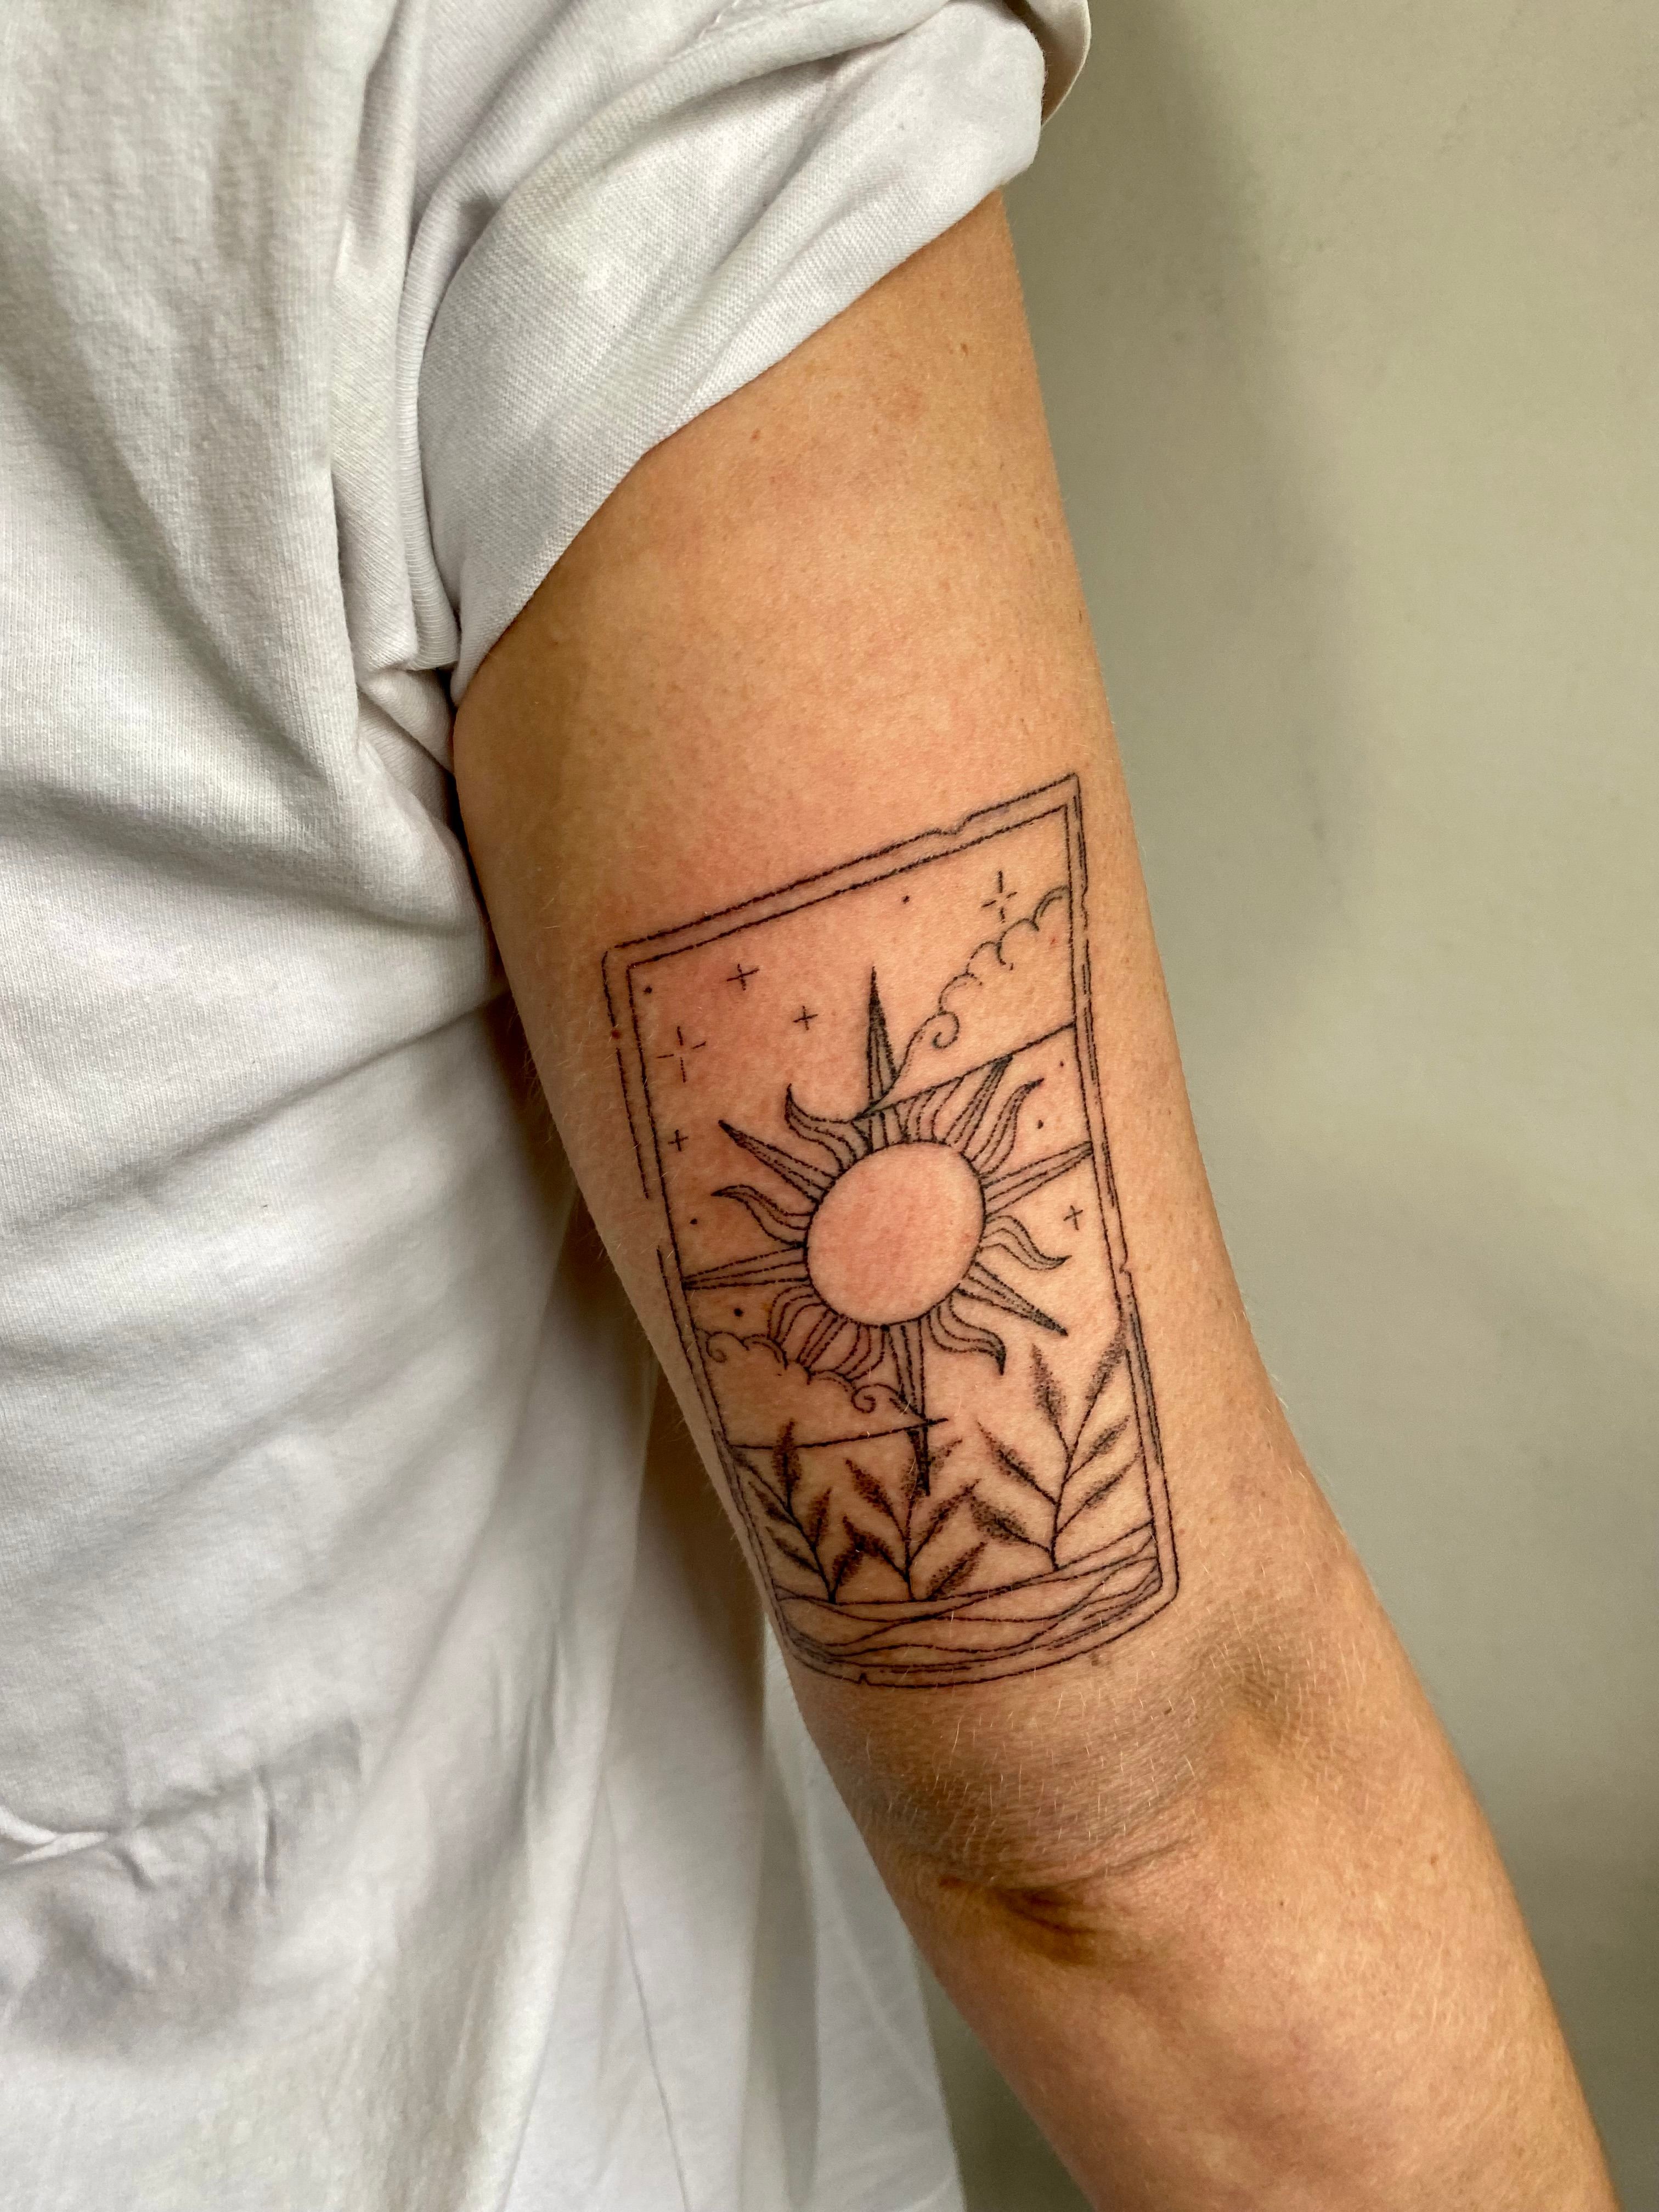 Simple Sun Tattoo On Elbow